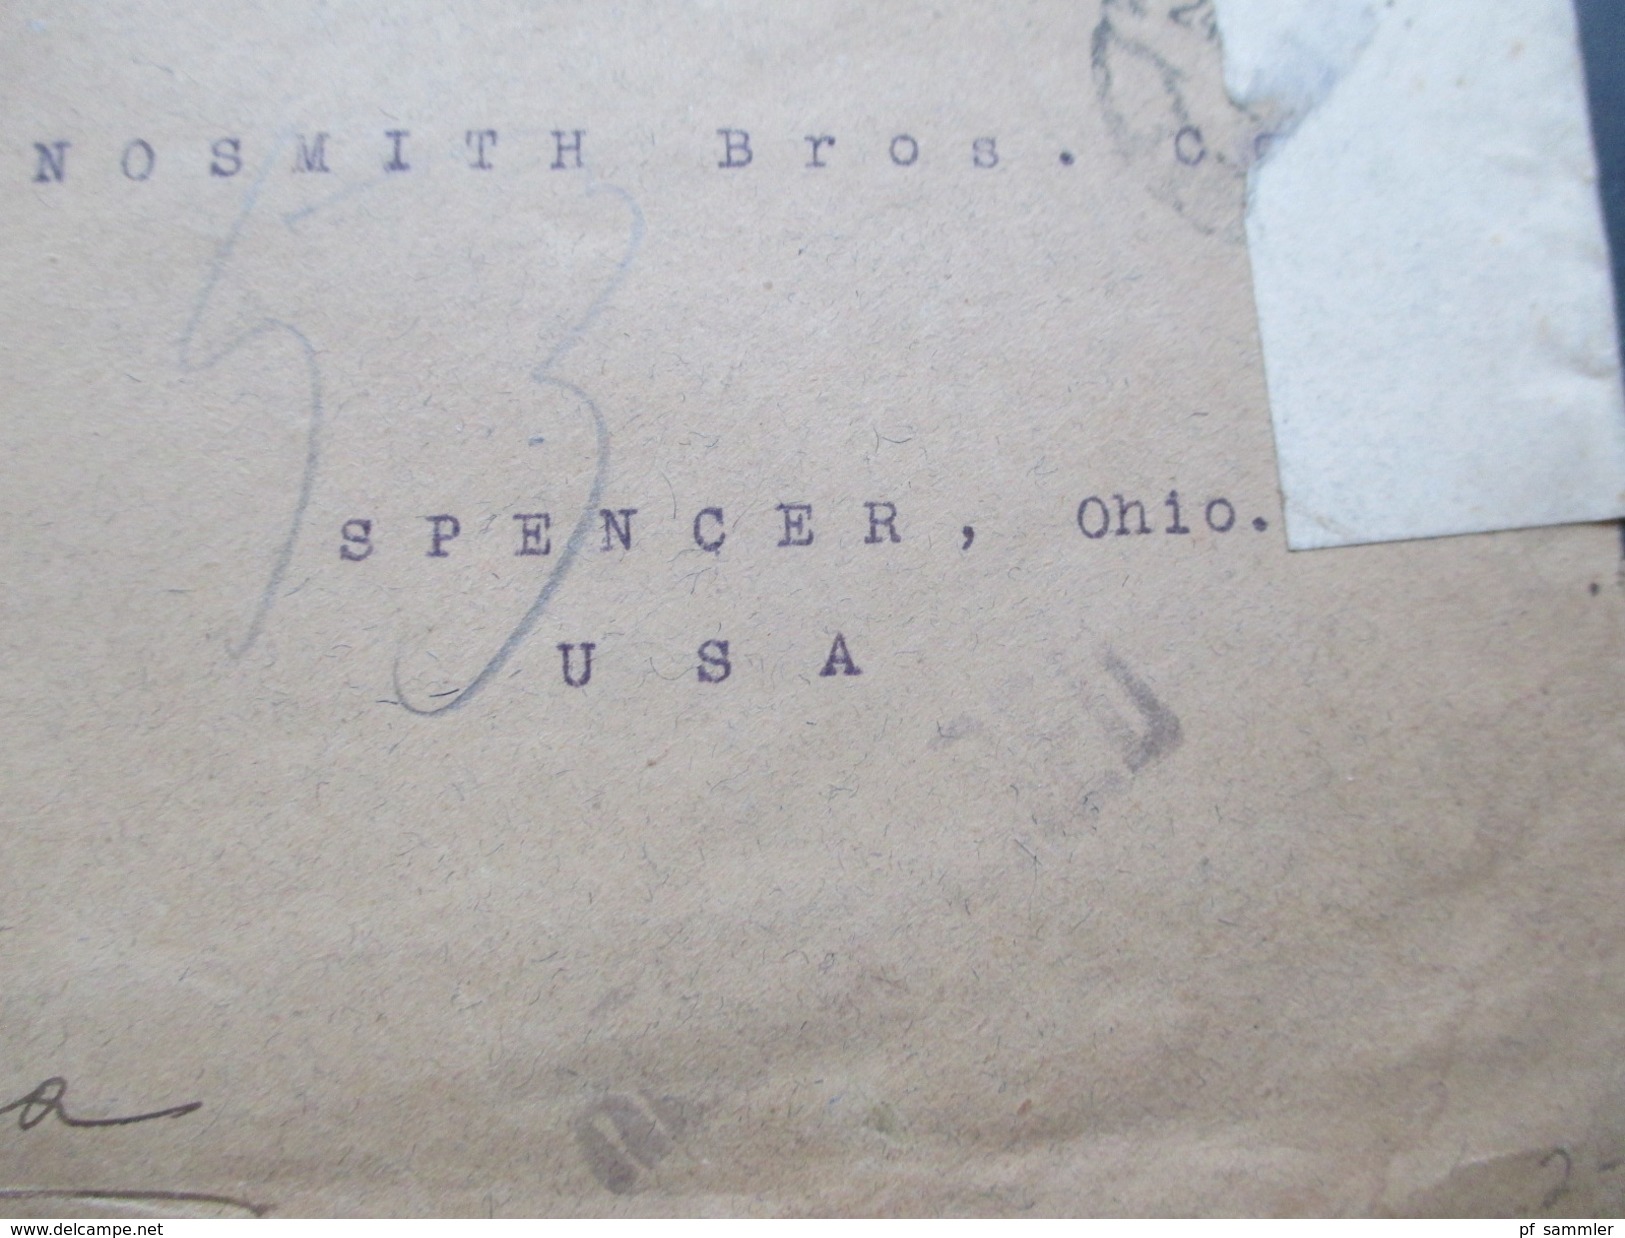 Russland 1917 / 18 R-Brief Petrograd 85 Nach Spencer Ohio USA. Zensur Zweier Länder! Viele Stempel! MIt Inhalt! - Lettres & Documents